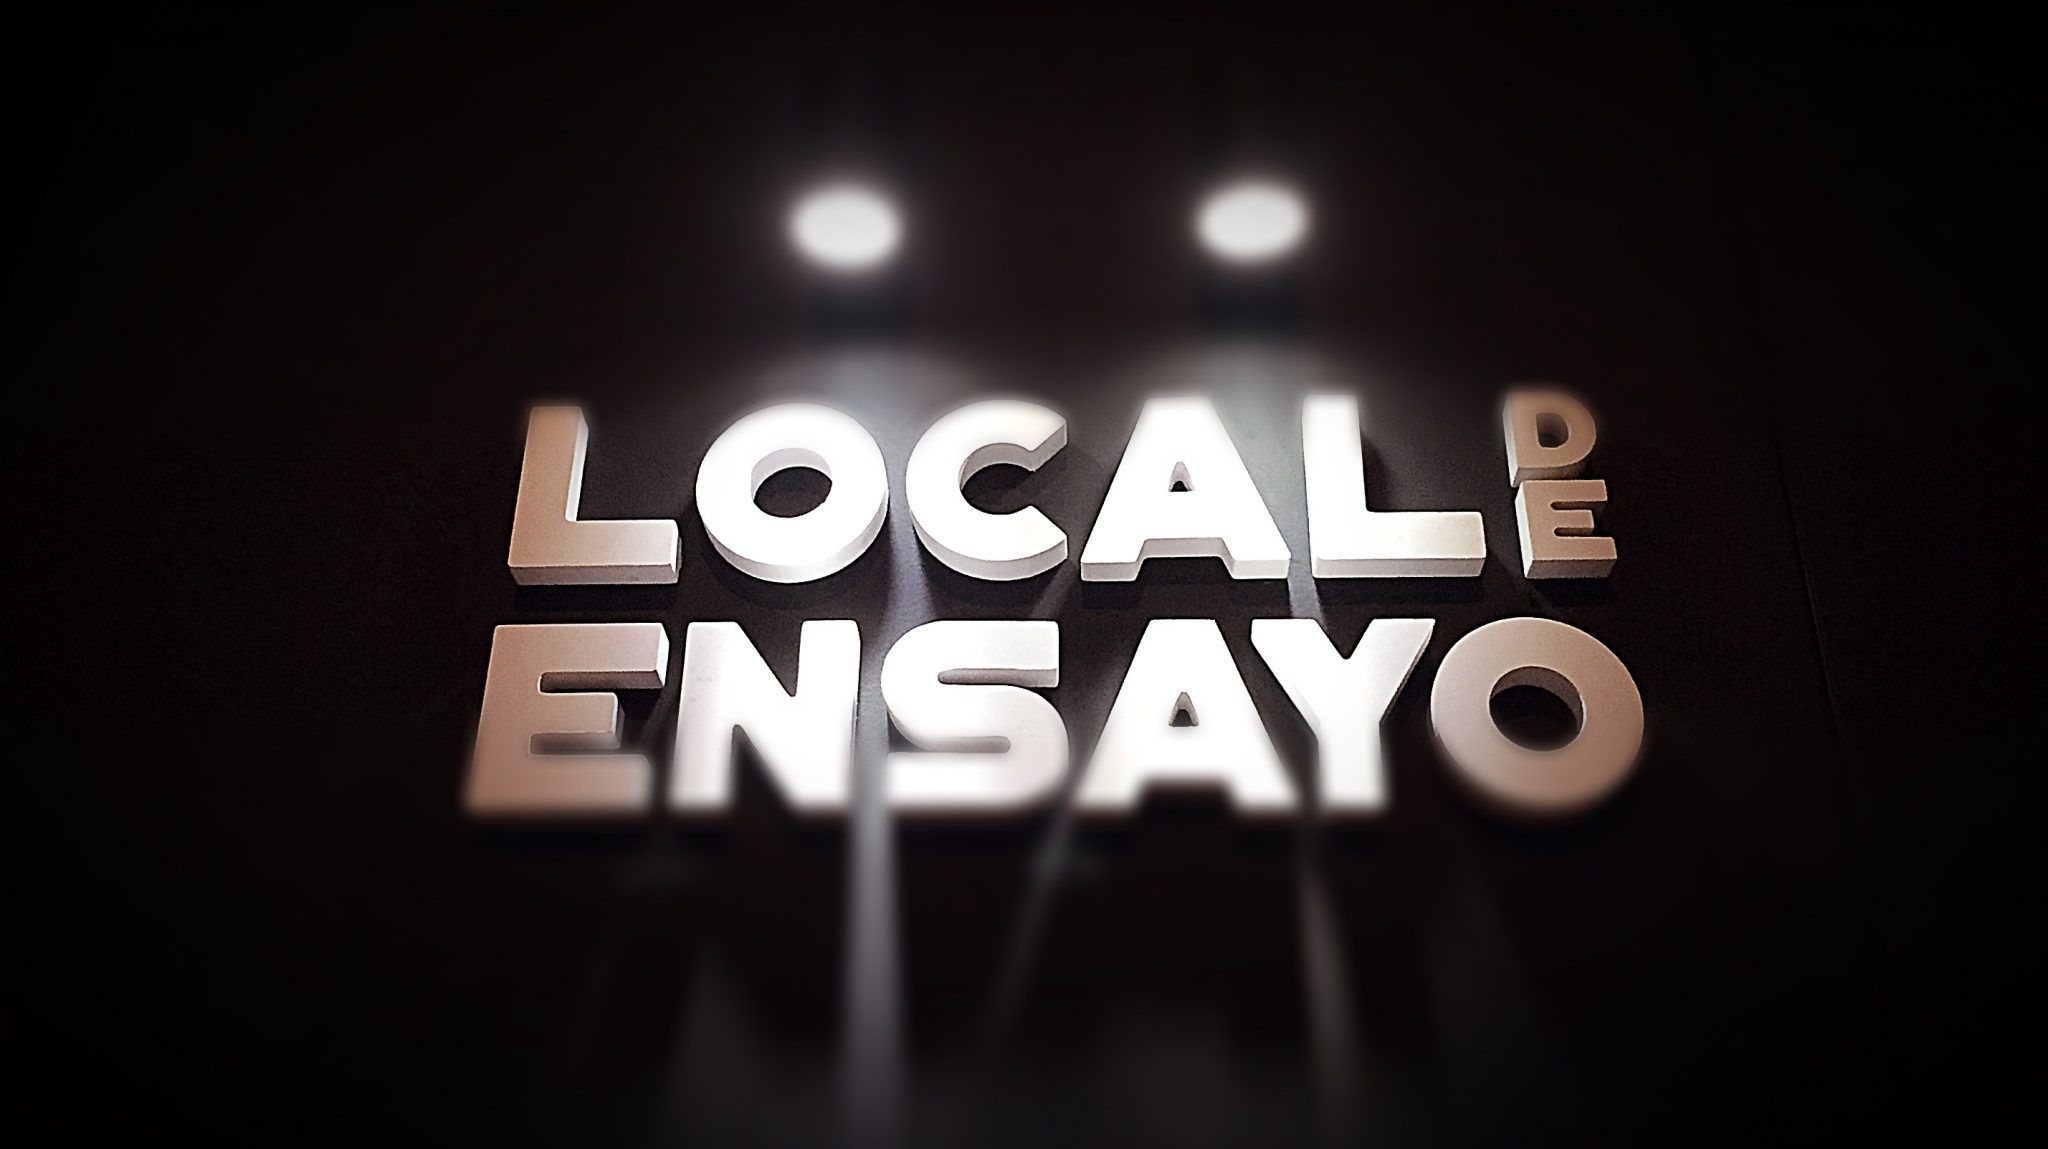 Local de Ensayo